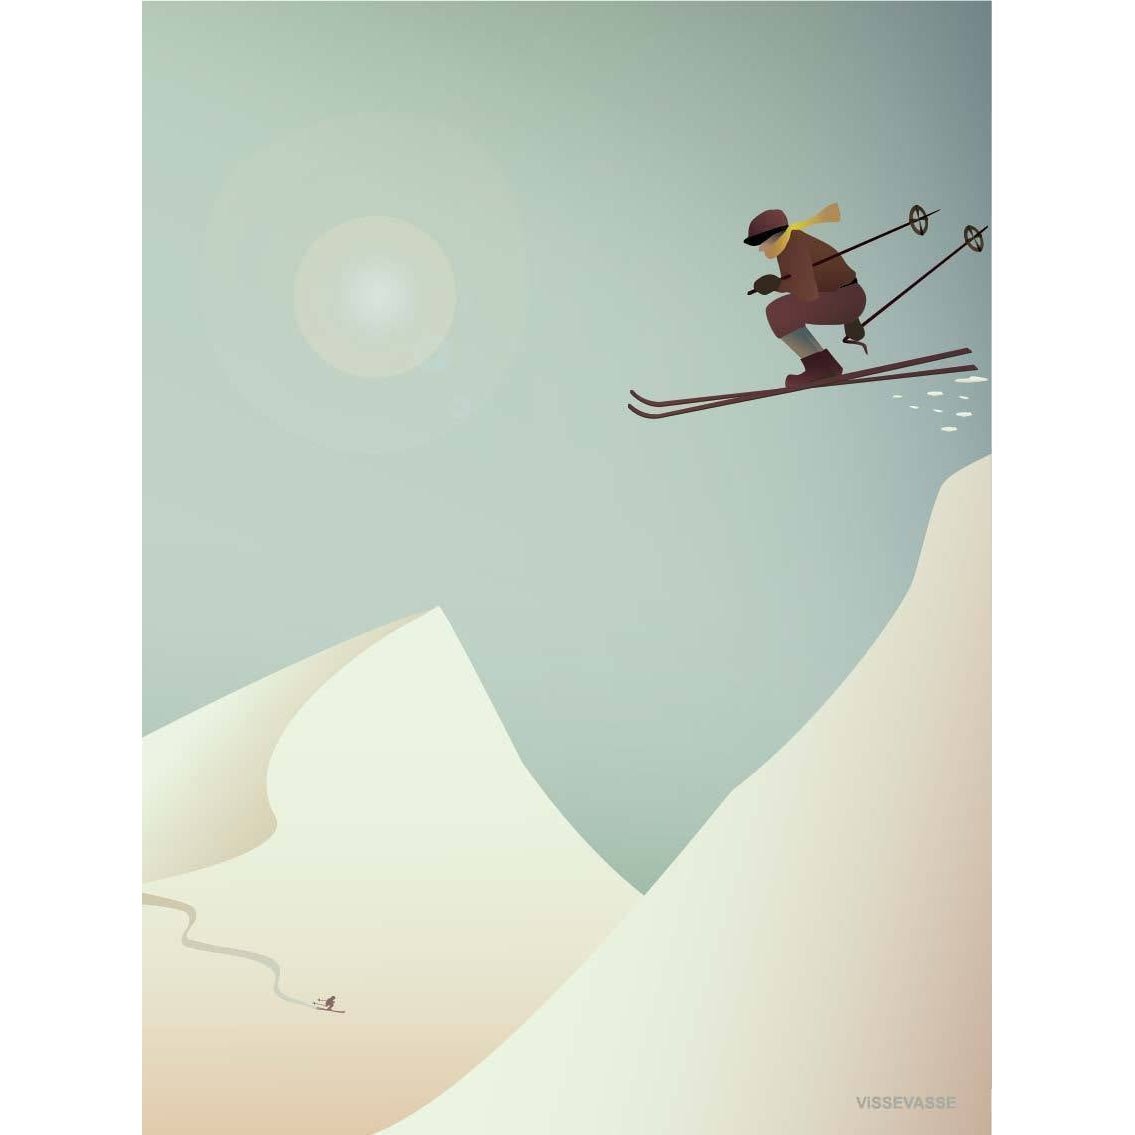 Vissevasse Skiing Plakat, 15X21 Cm